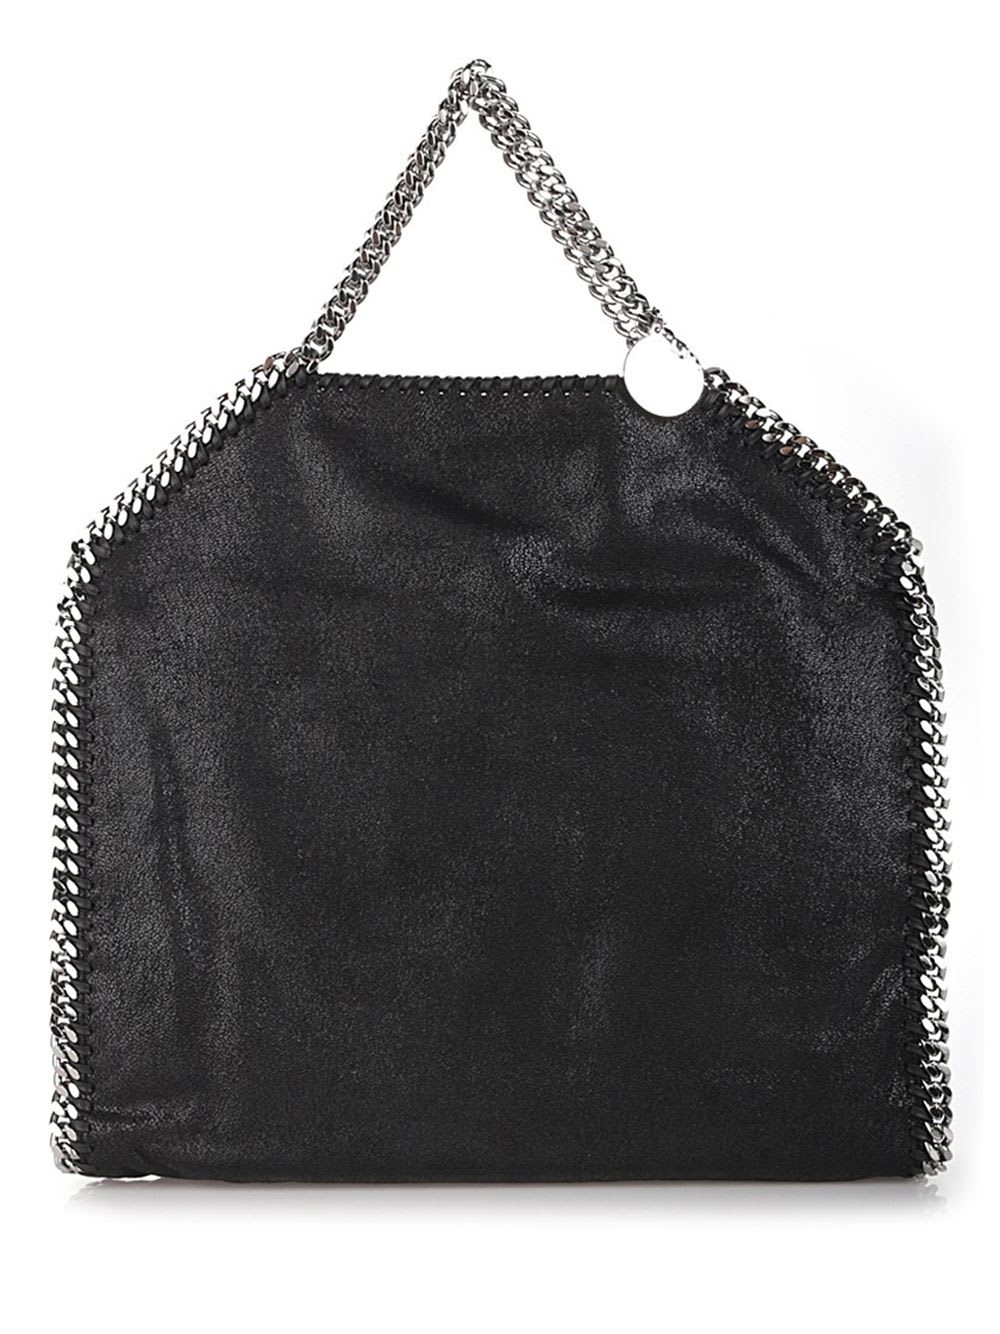 Stella Mccartney Black Falabella Tote Bag In Nero